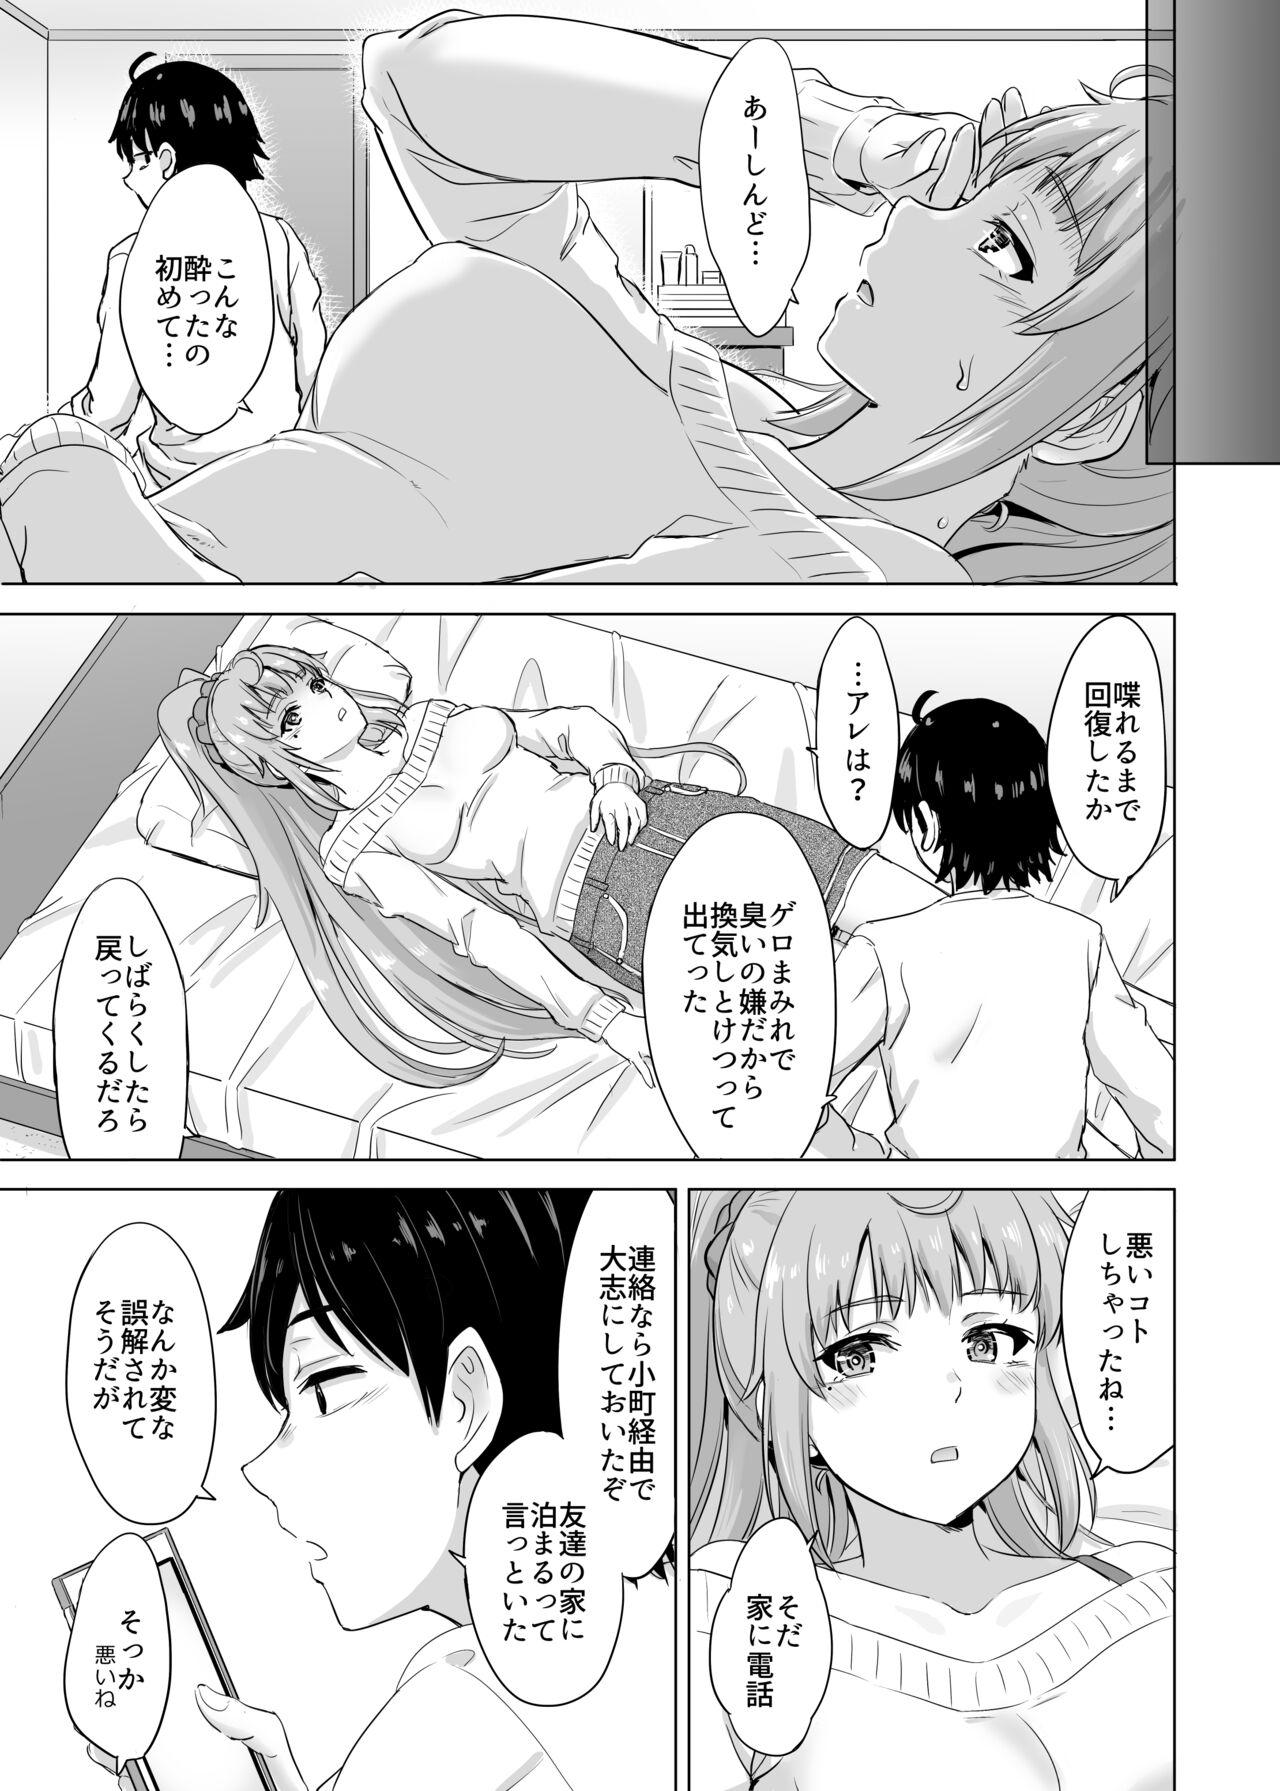 Gay Medical あーしさんサキサキ漫画 - Yahari ore no seishun love come wa machigatteiru Gay Pov - Page 3